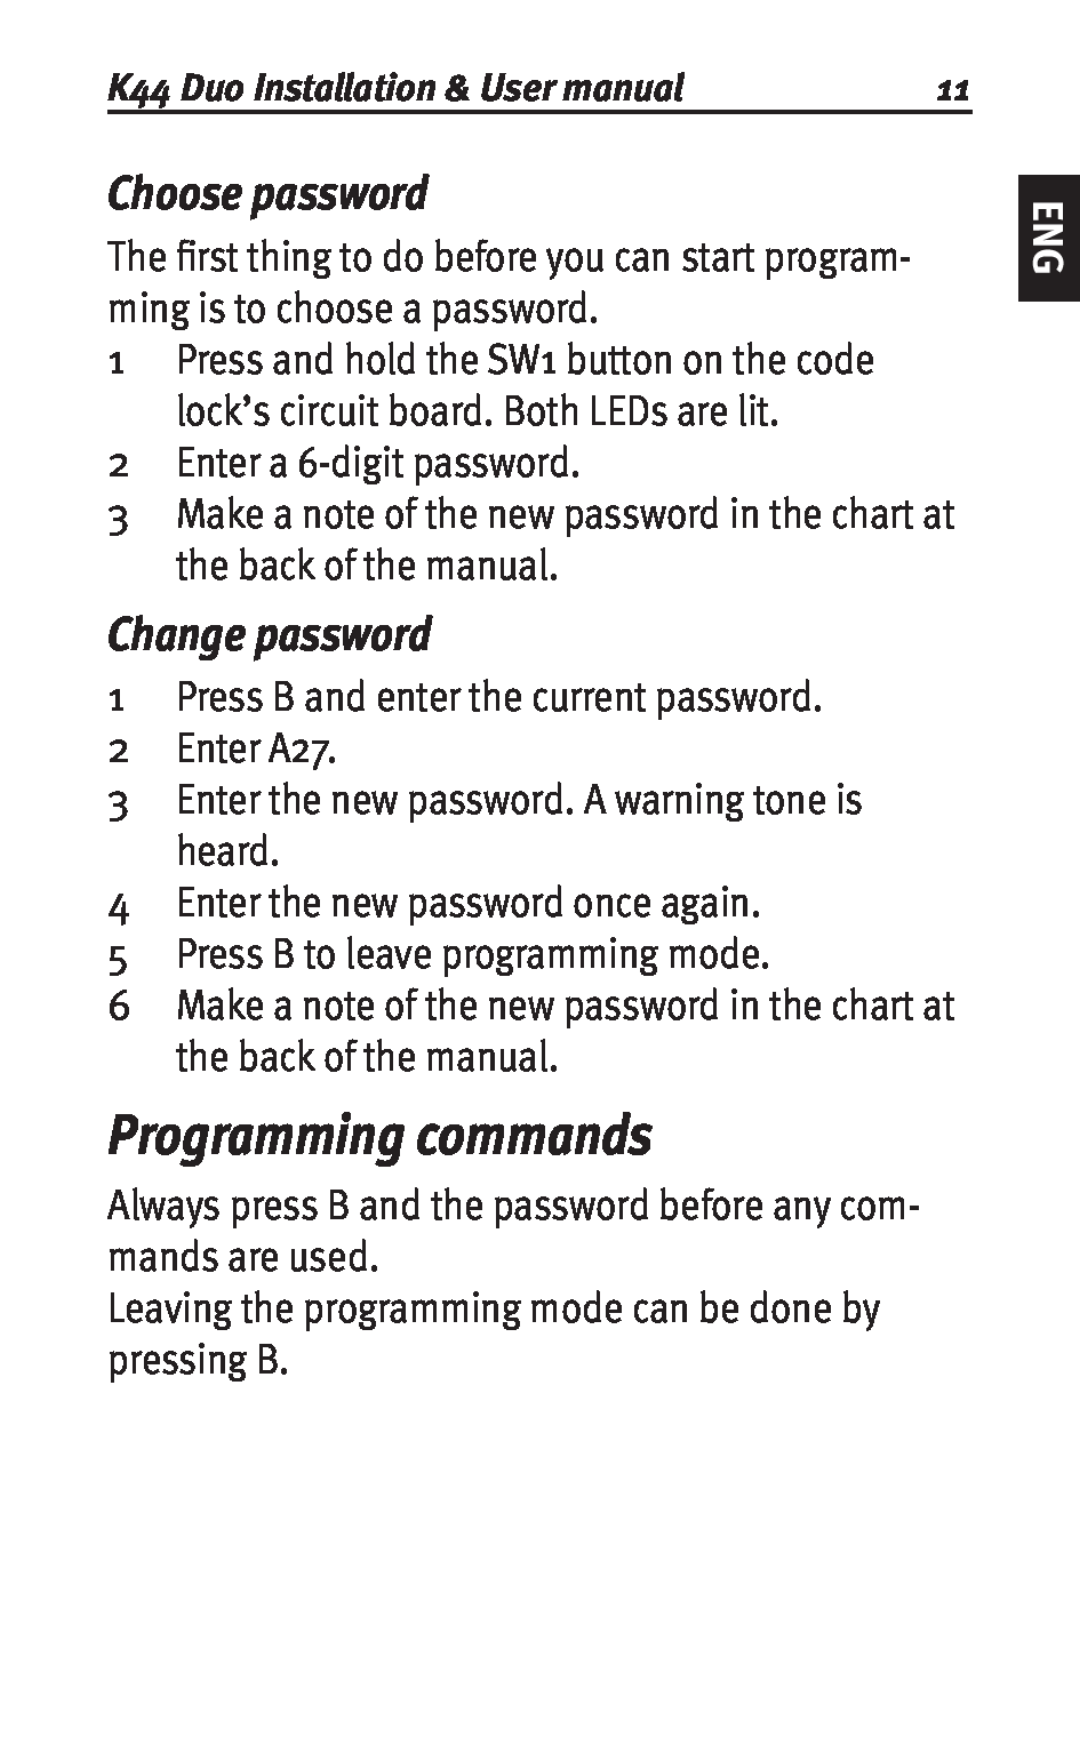 Siemens K44 user manual Programming commands, Choose password, Change password 